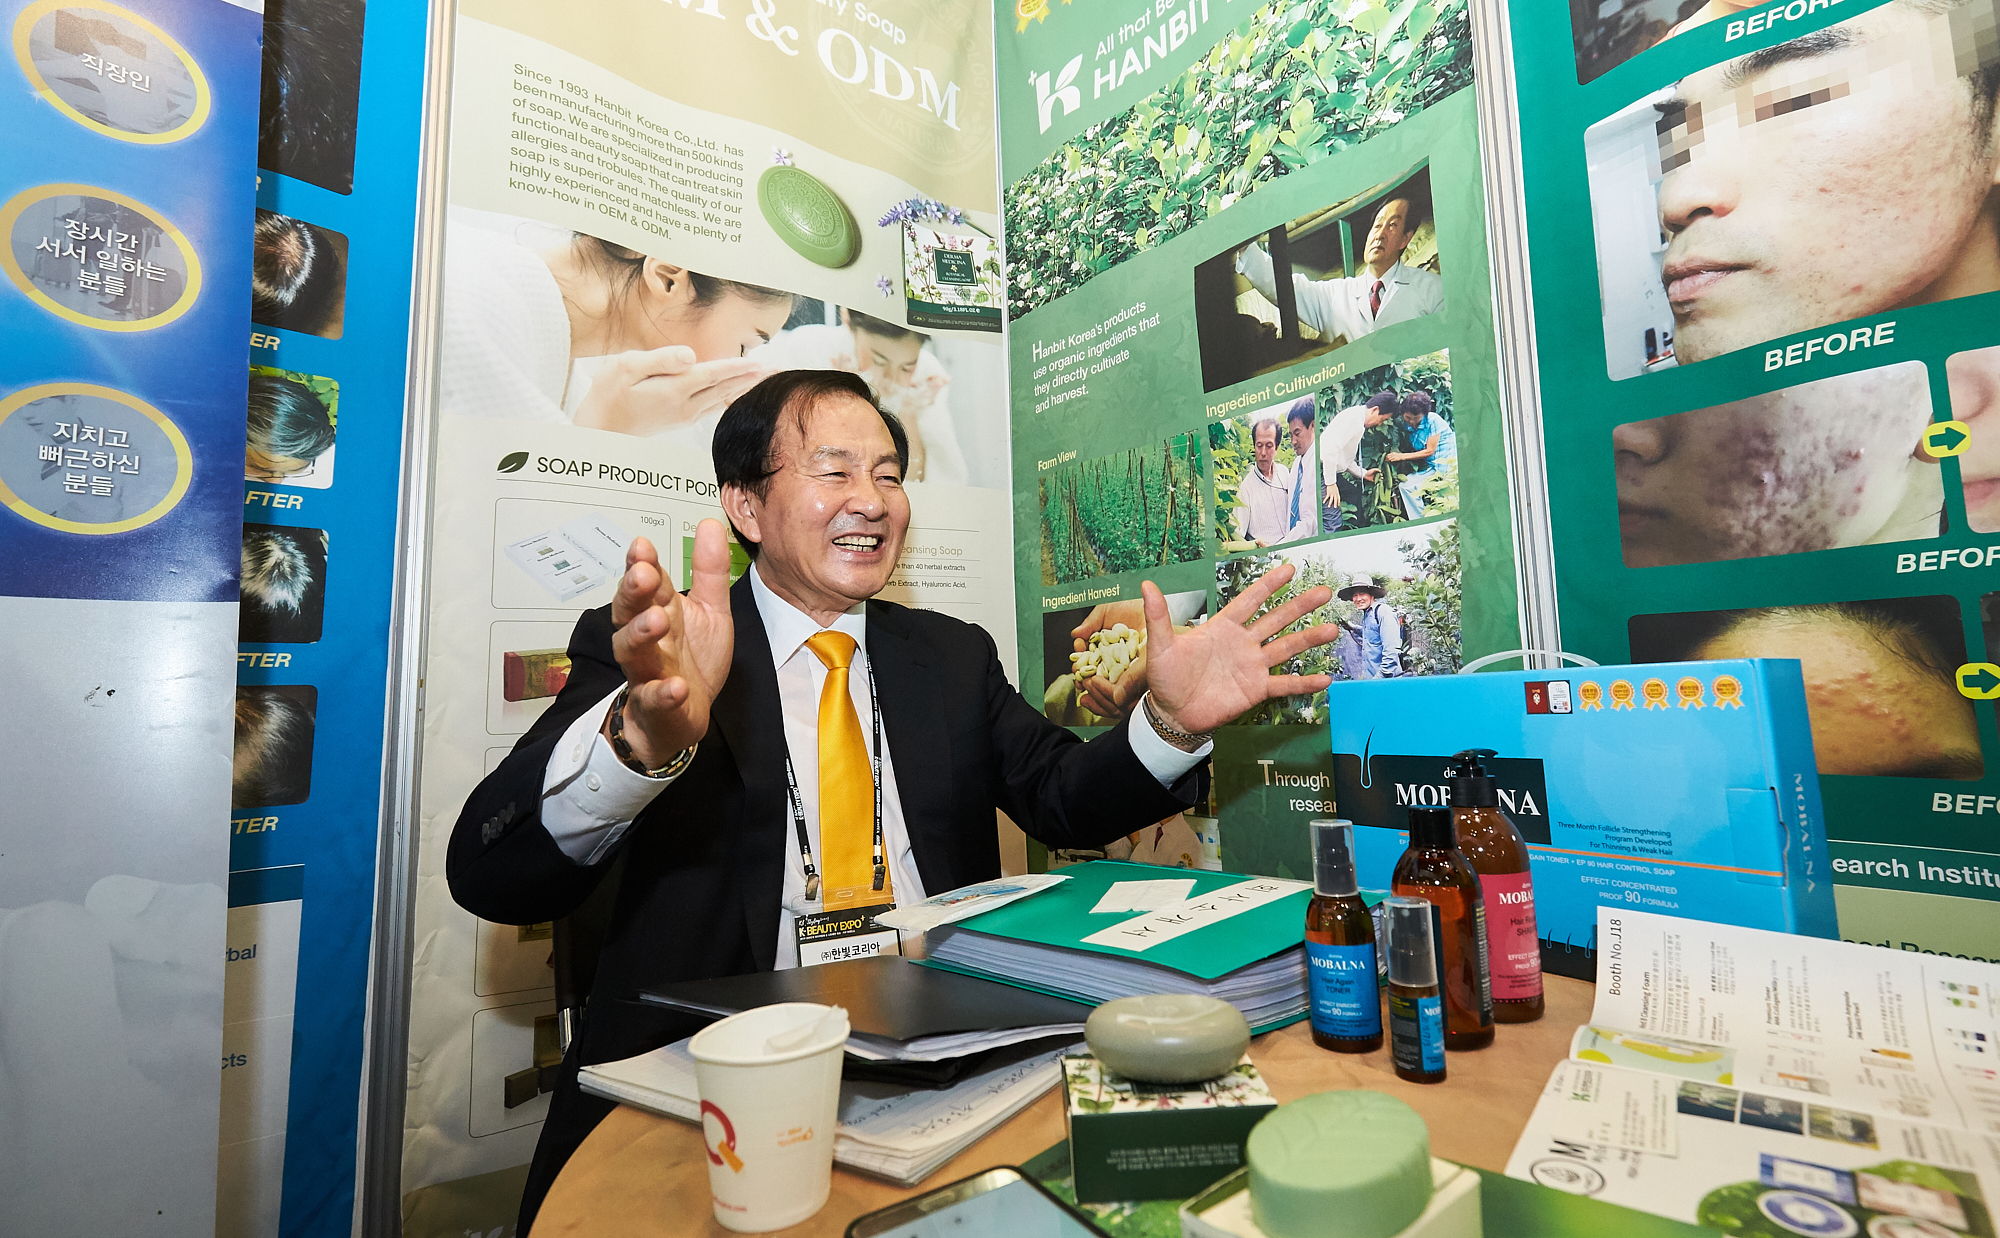 뷰티박람회에 해마다 참가해 꾸준한 성장을 보이는 한빛코리아의 김수남 대표가 제품 설명을 하고 있다.